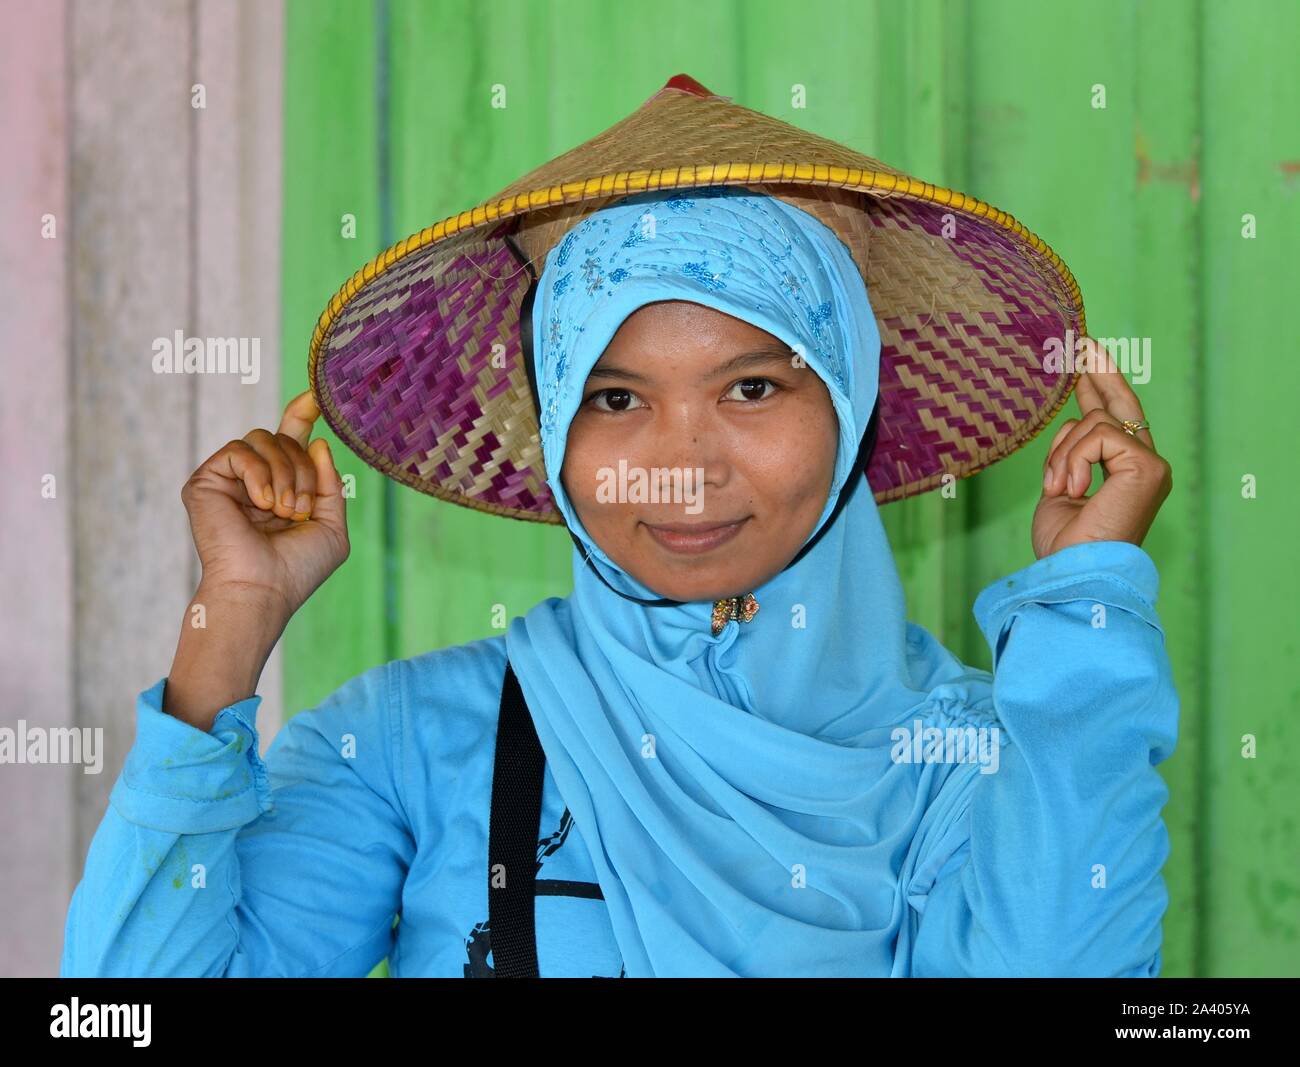 Jeune femme musulmane indonésienne porte sur le dessus de son hijab turquoise un chapeau de paille conique asiatiques (caping) avec appuie-tête. Banque D'Images